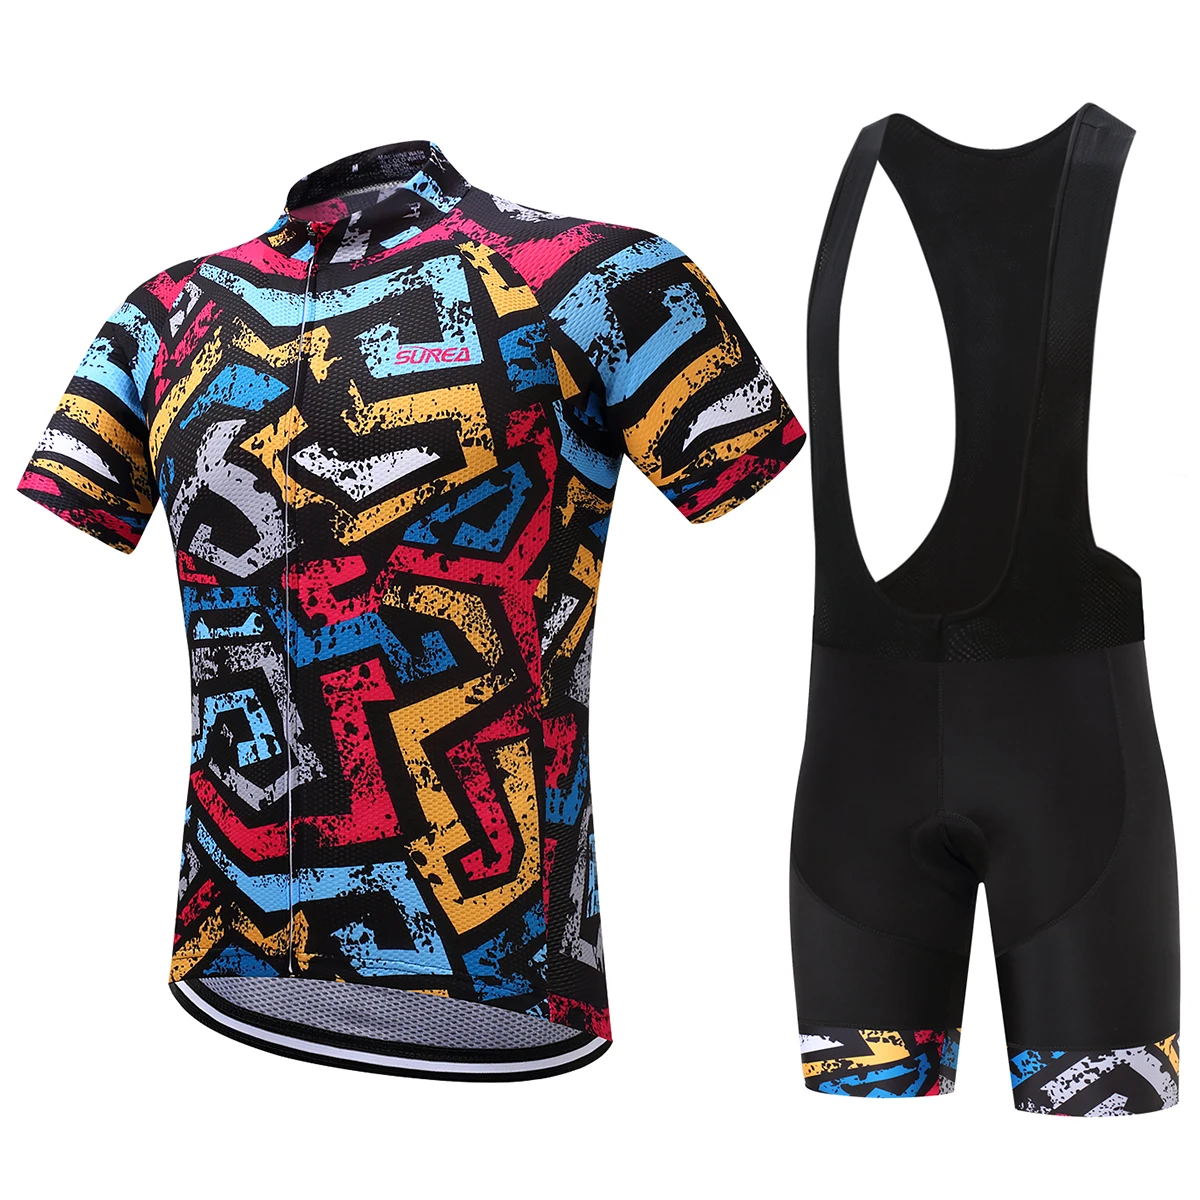 Surea новые летние велосипедные шорты Джерси велосипедная Одежда Майо спортивные одежды для велосипедиста - Цвет: Black strap set